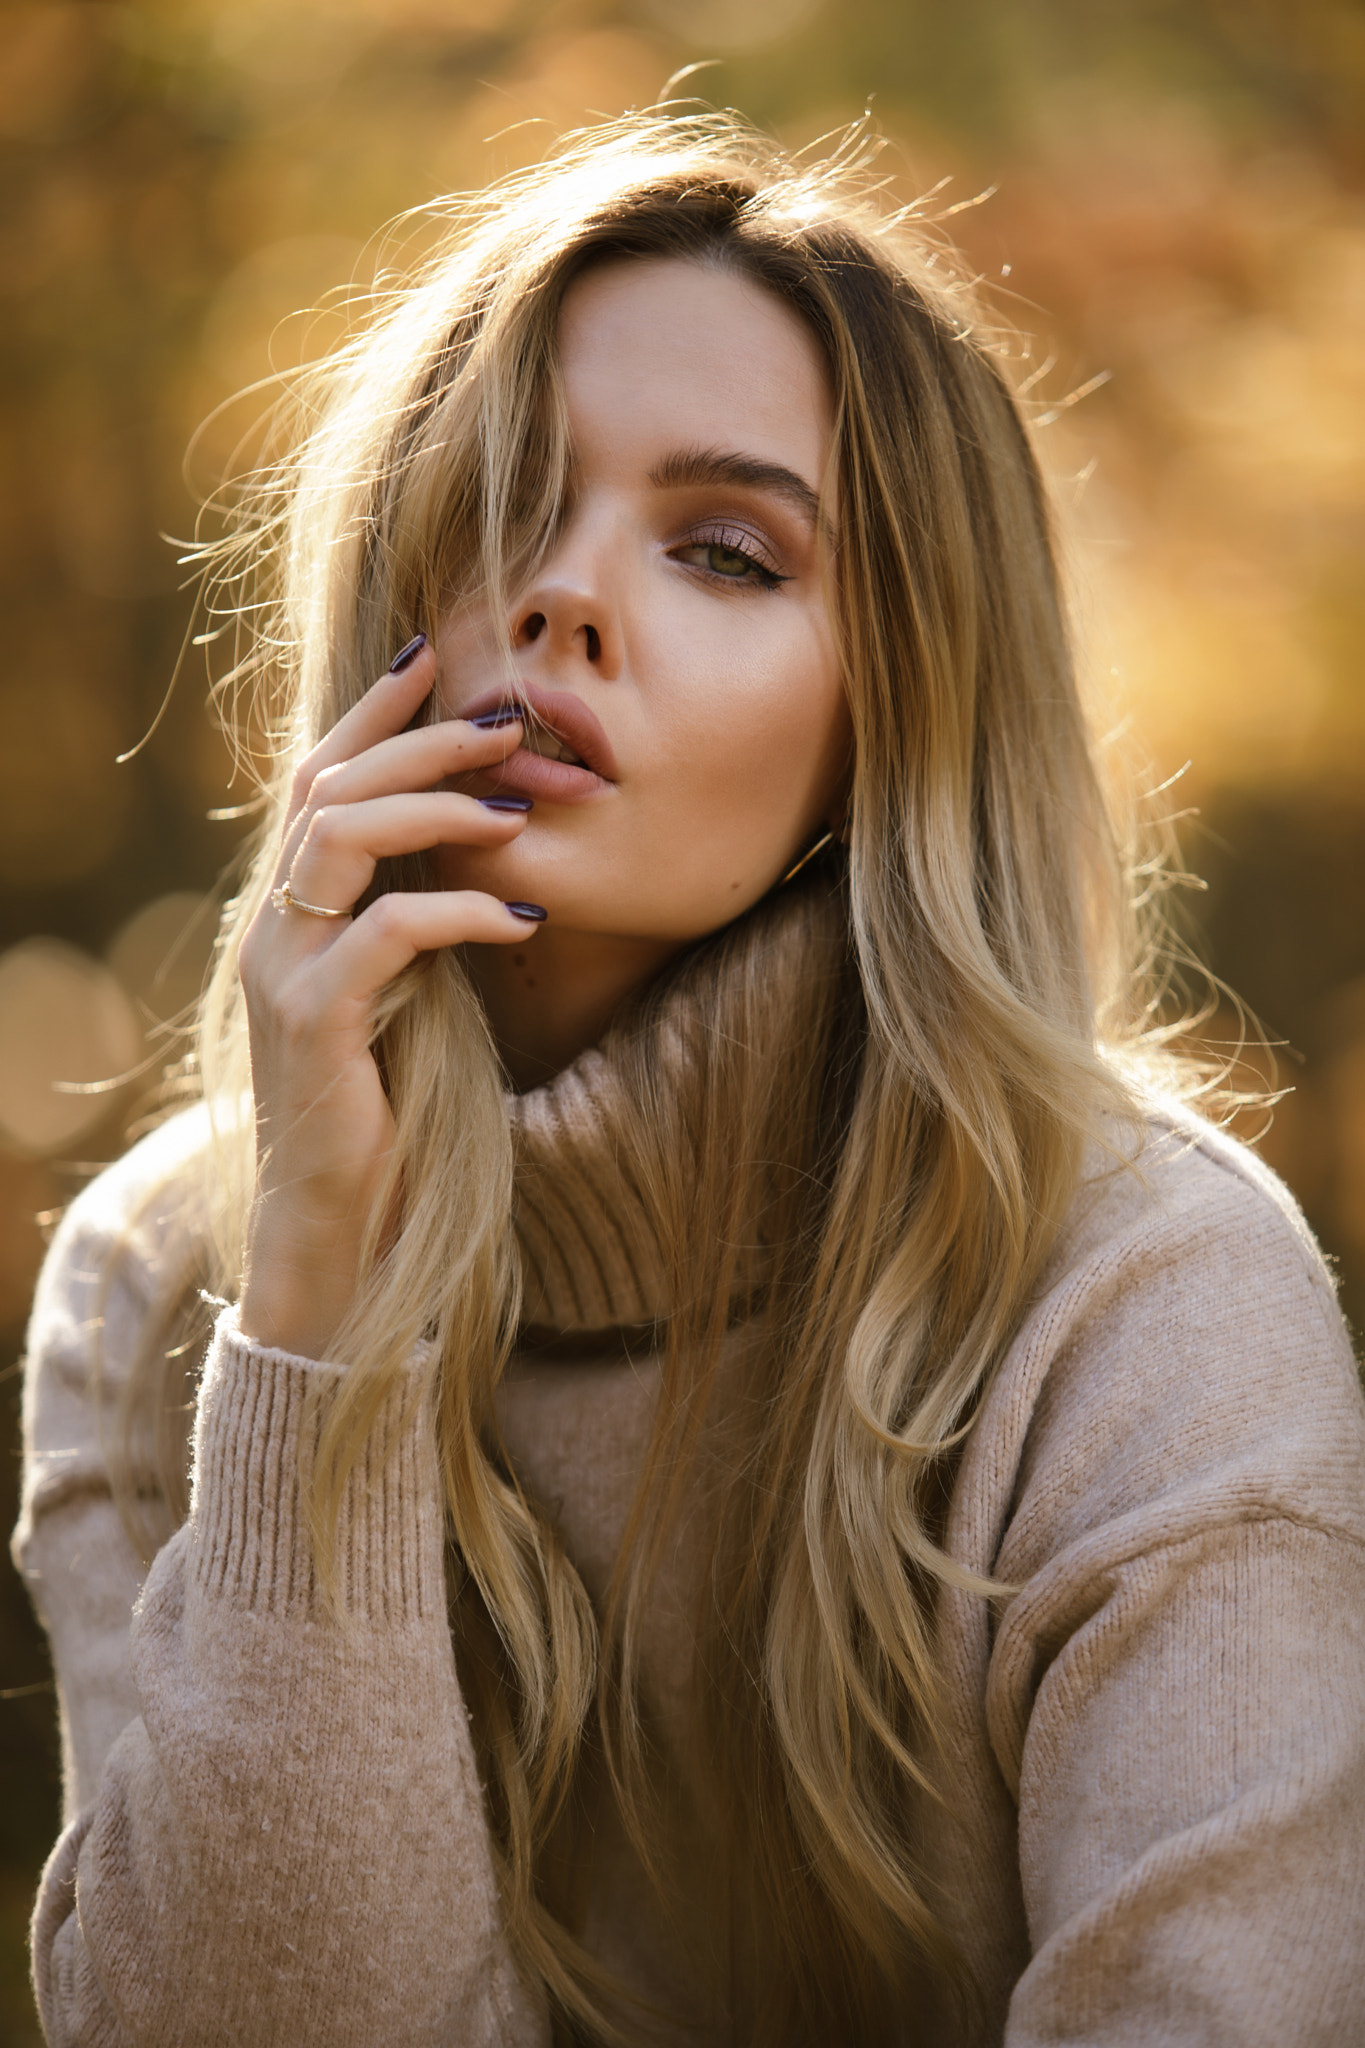 Ukasz Struzik Blonde Coats Women Outdoors Women Model Portrait Display Finger On Lips Hair In Face S 1365x2048